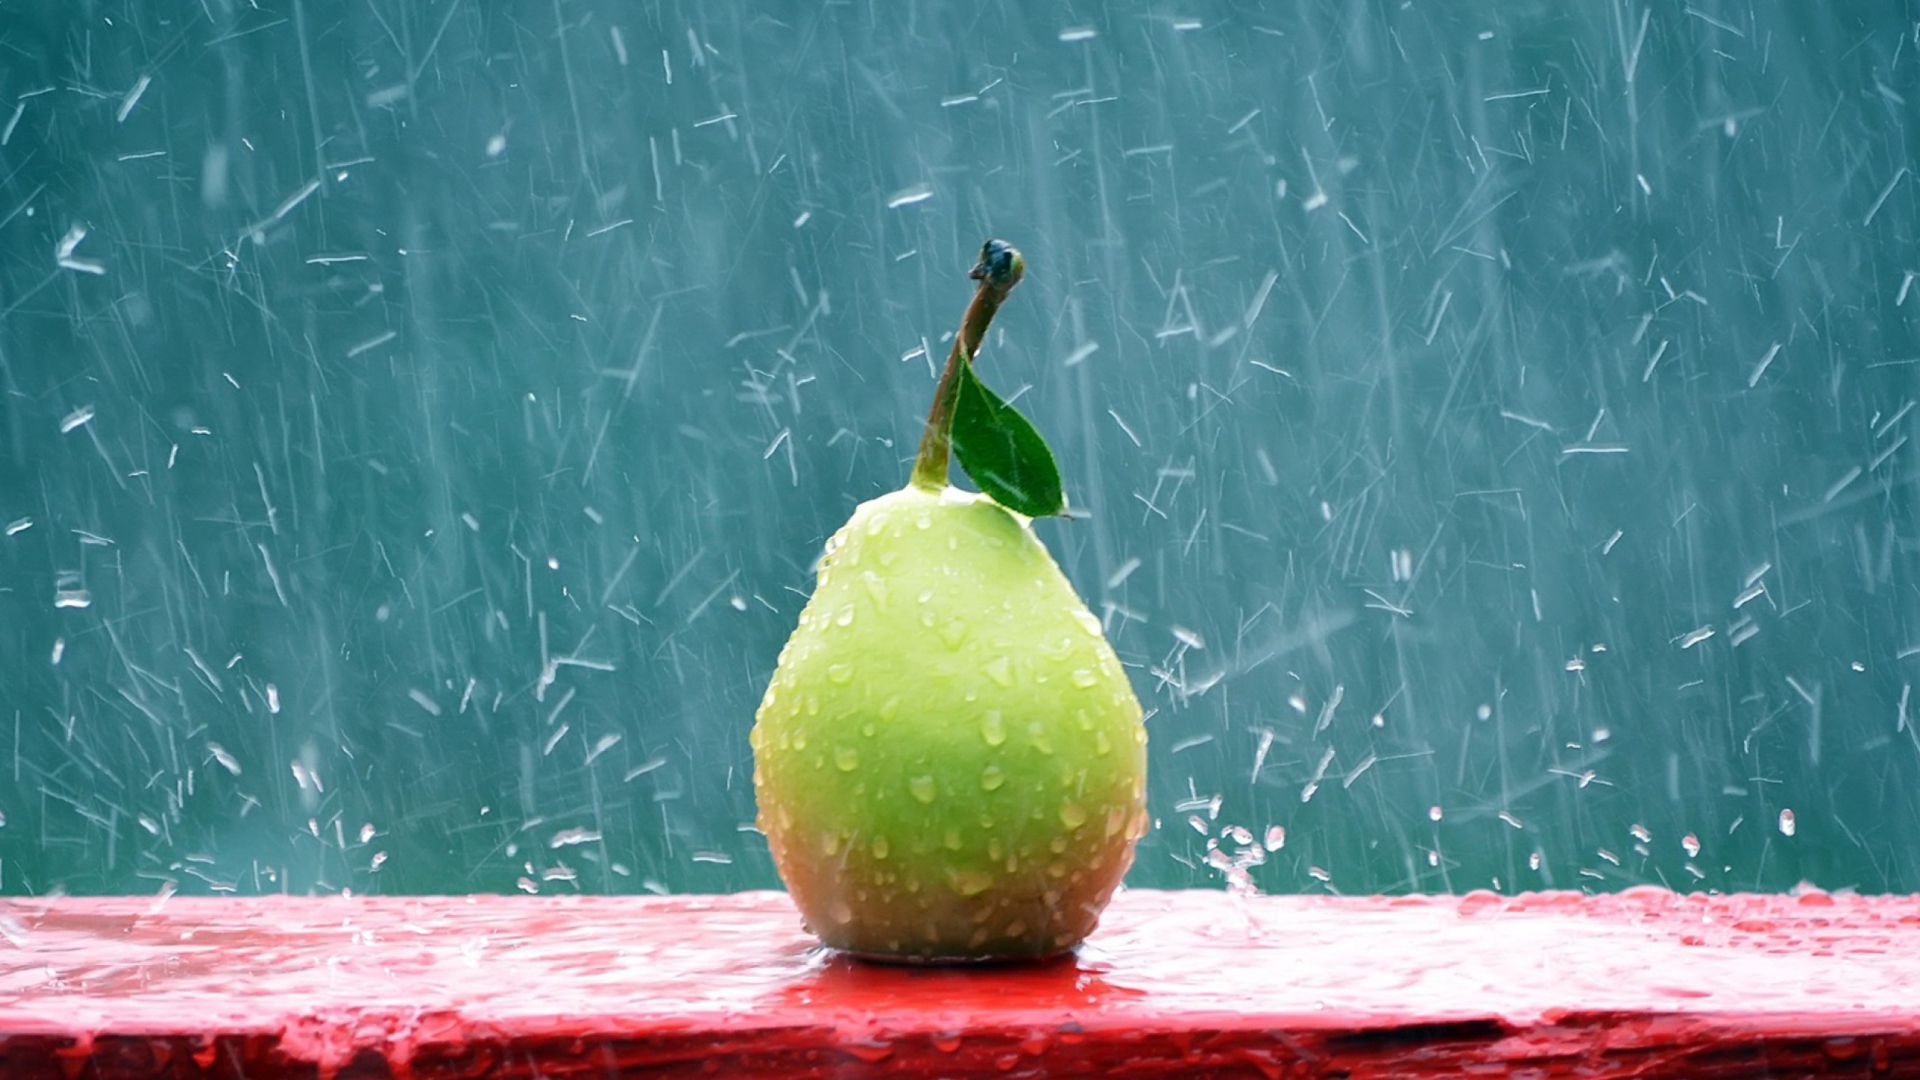 Das Green Pear In The Rain Wallpaper 1920x1080